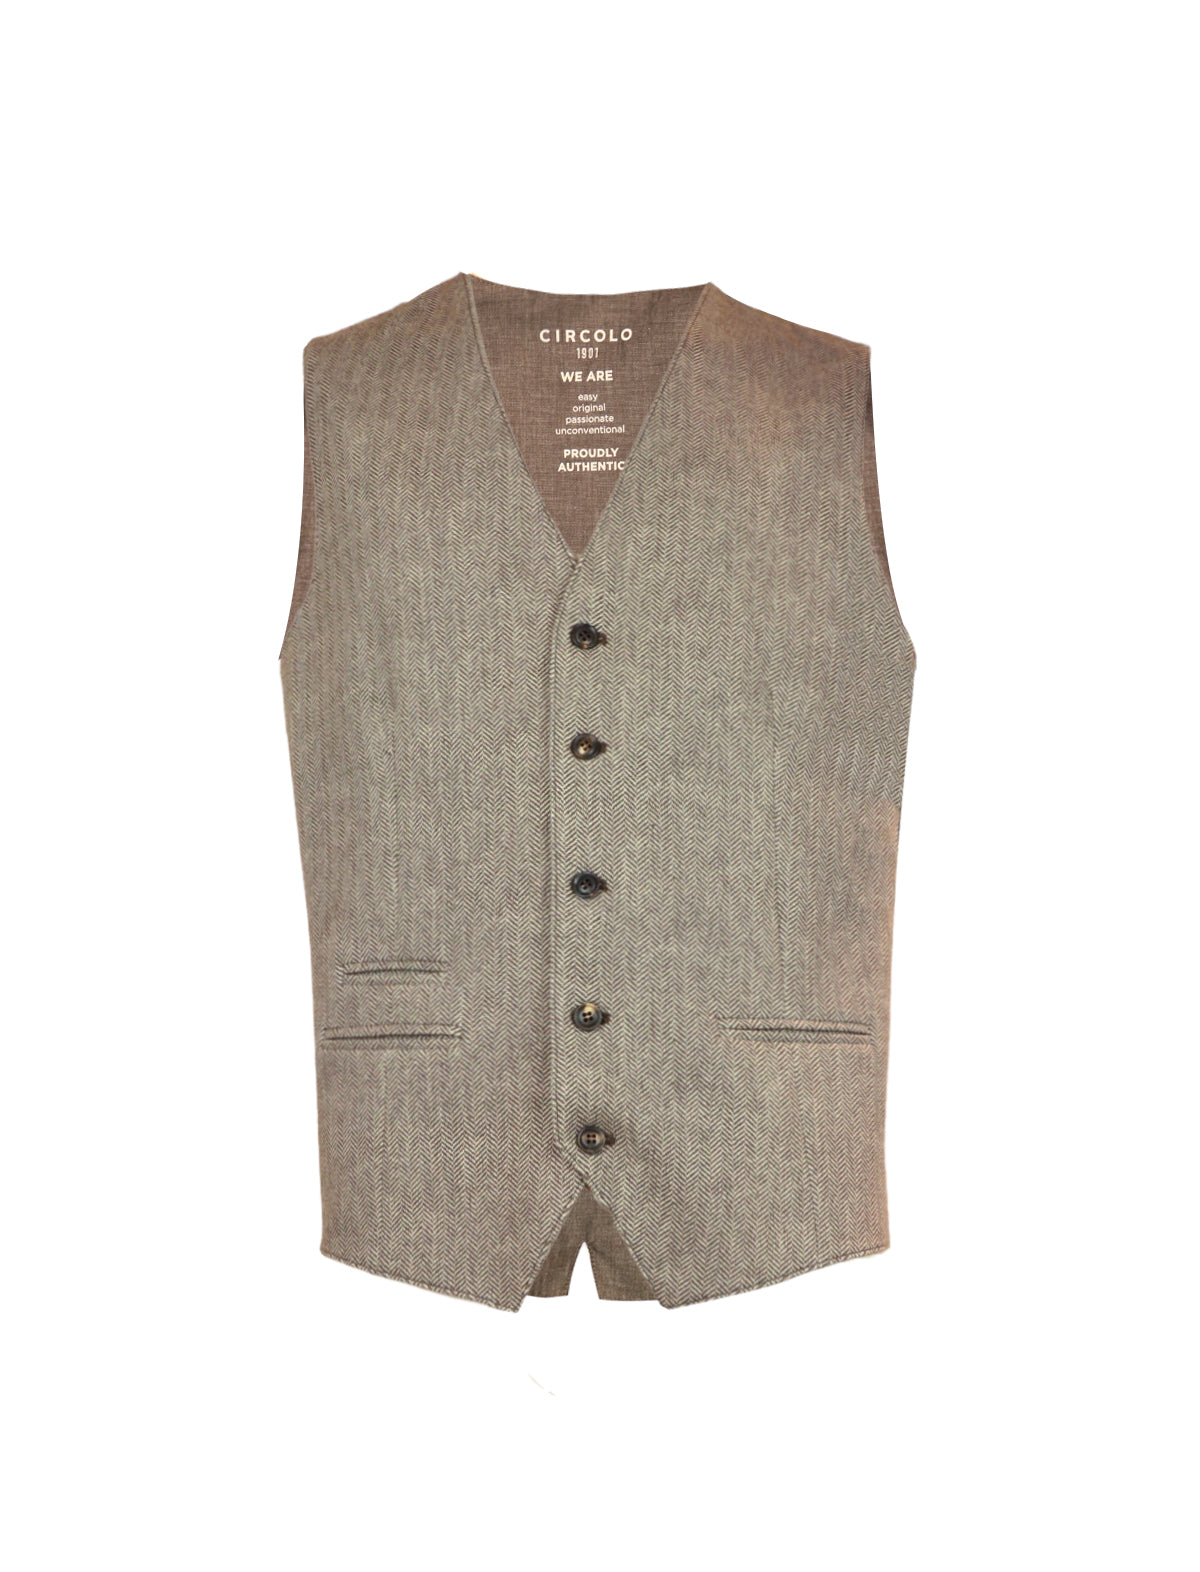 CIRCOLO 1901 Herringbone Vest in Brown